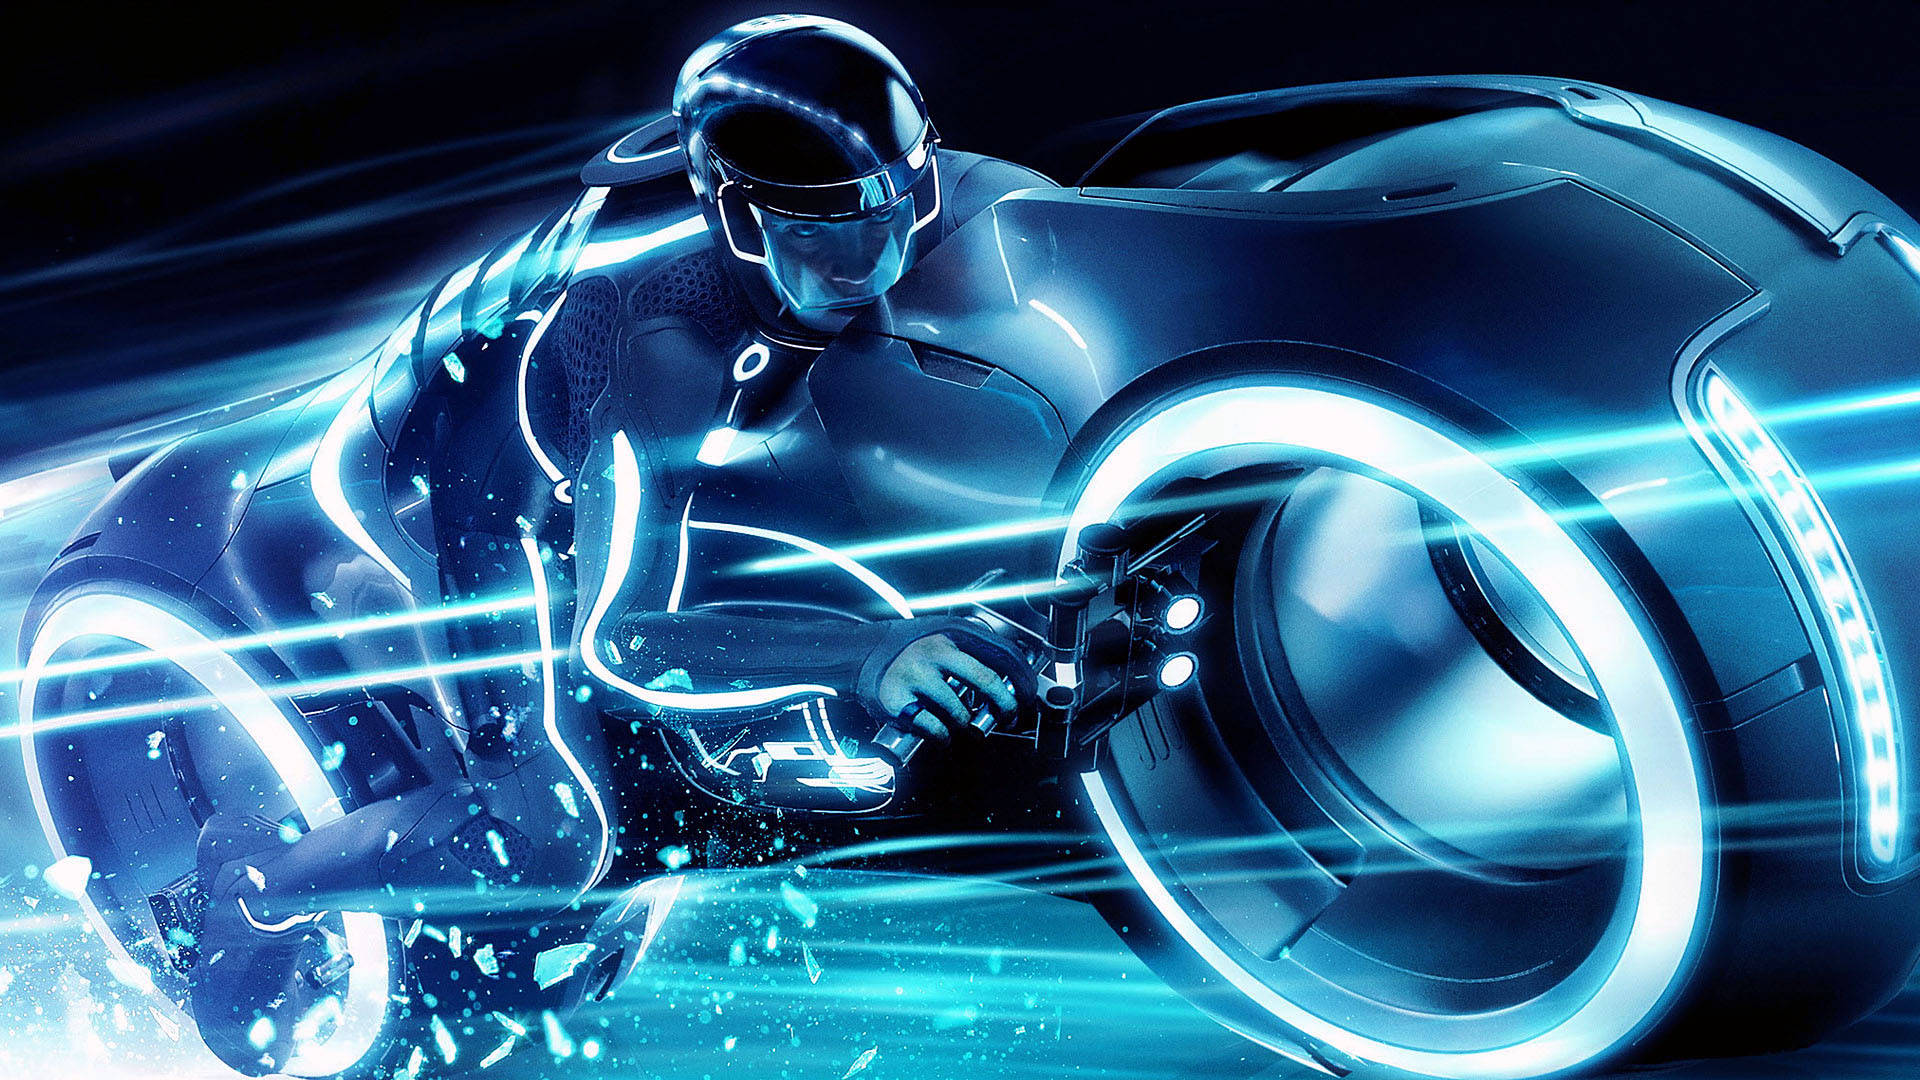 En mand kører på en motorcykel med et blåt lys i baggrunden. Wallpaper